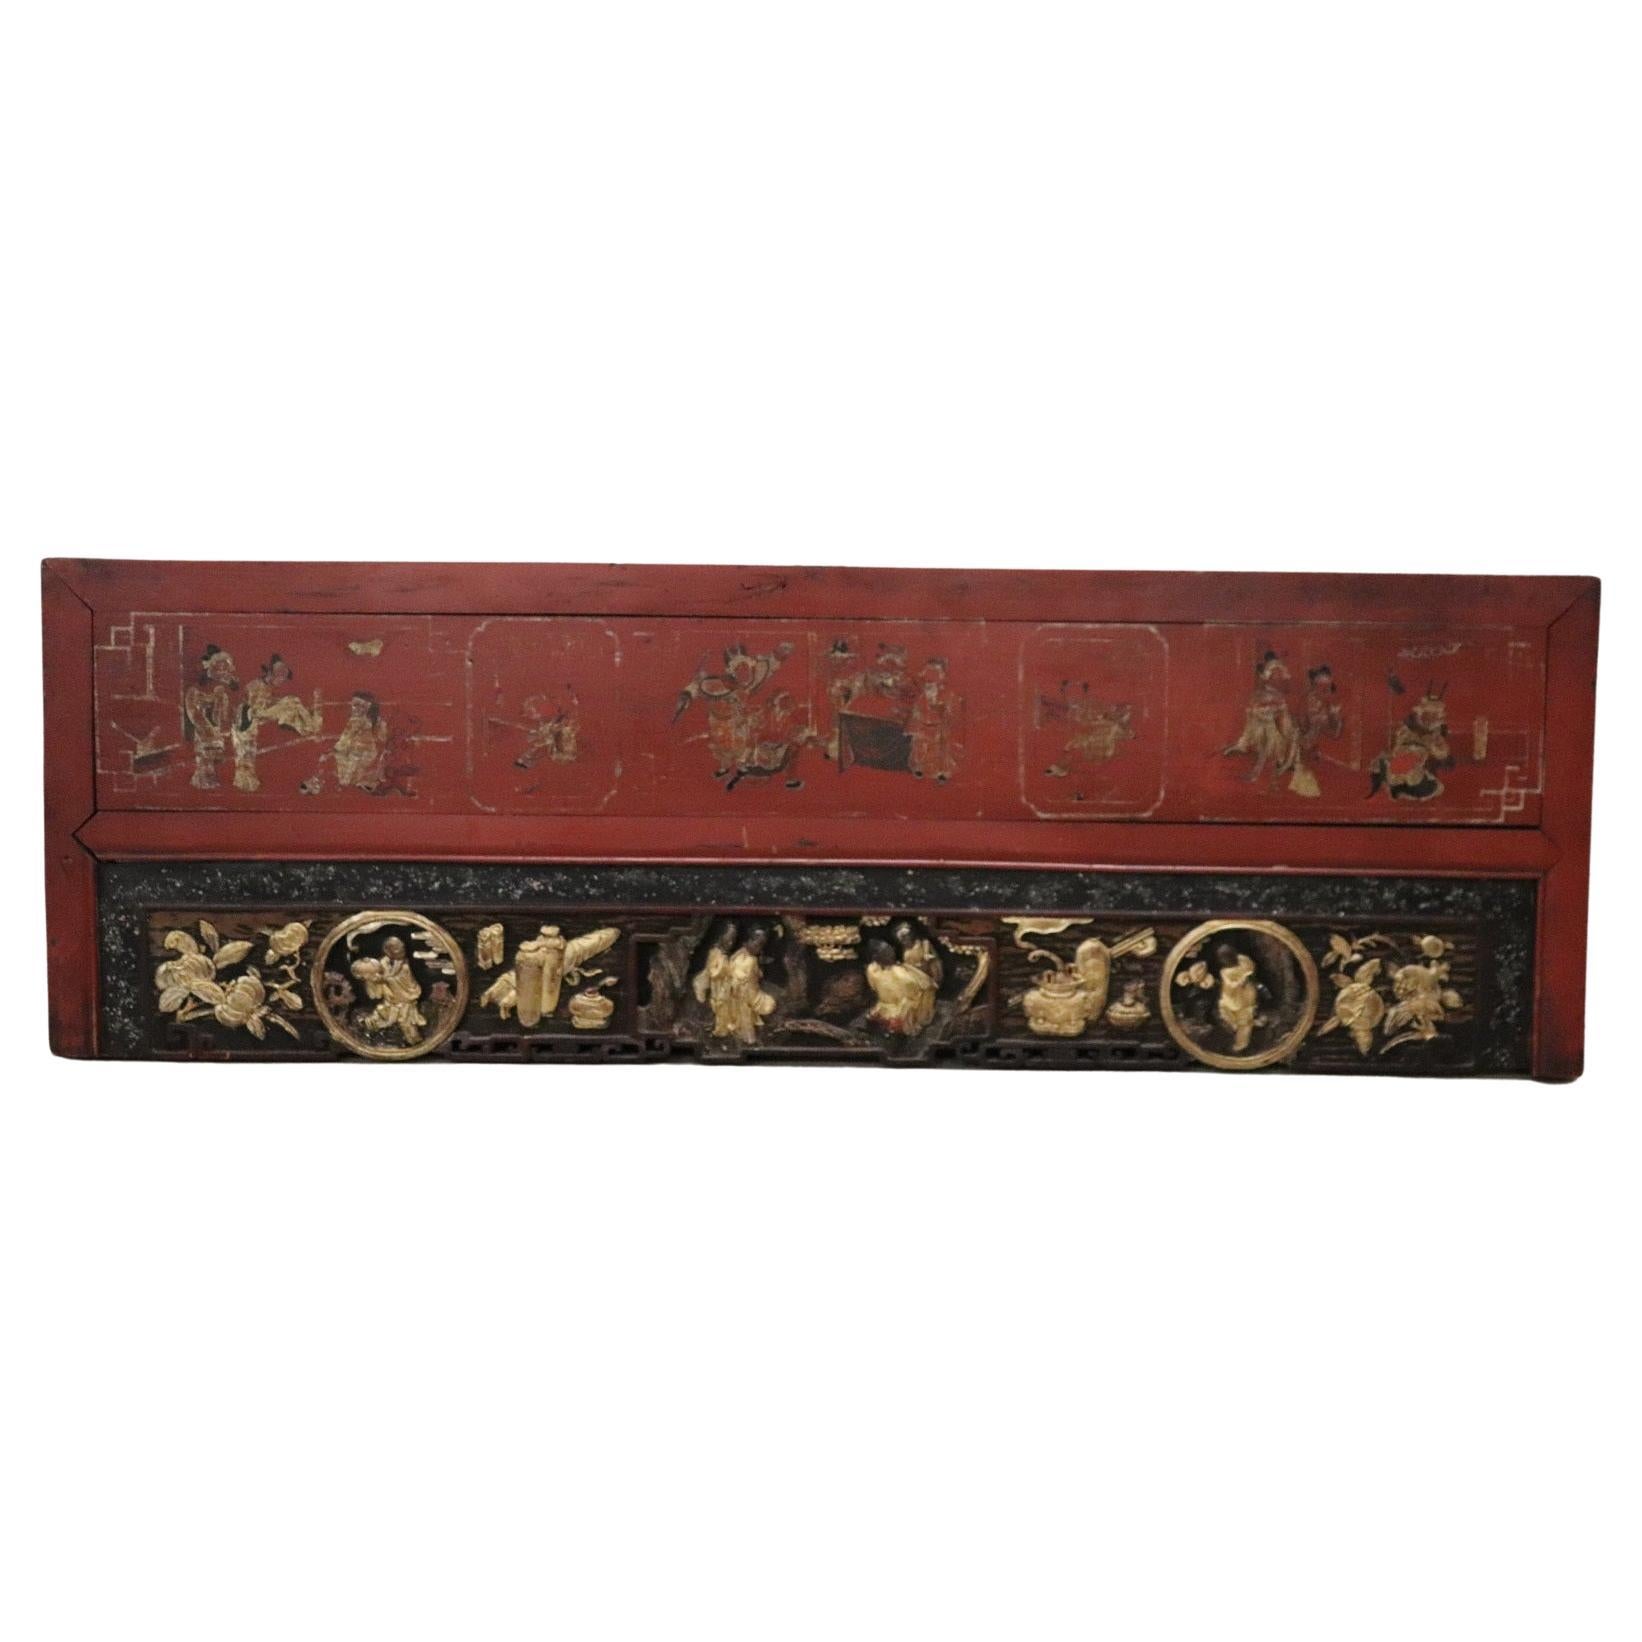 Lackierte und geschnitzte Holzwandtafel aus der China-Dynastie des 19. Jahrhunderts Quing